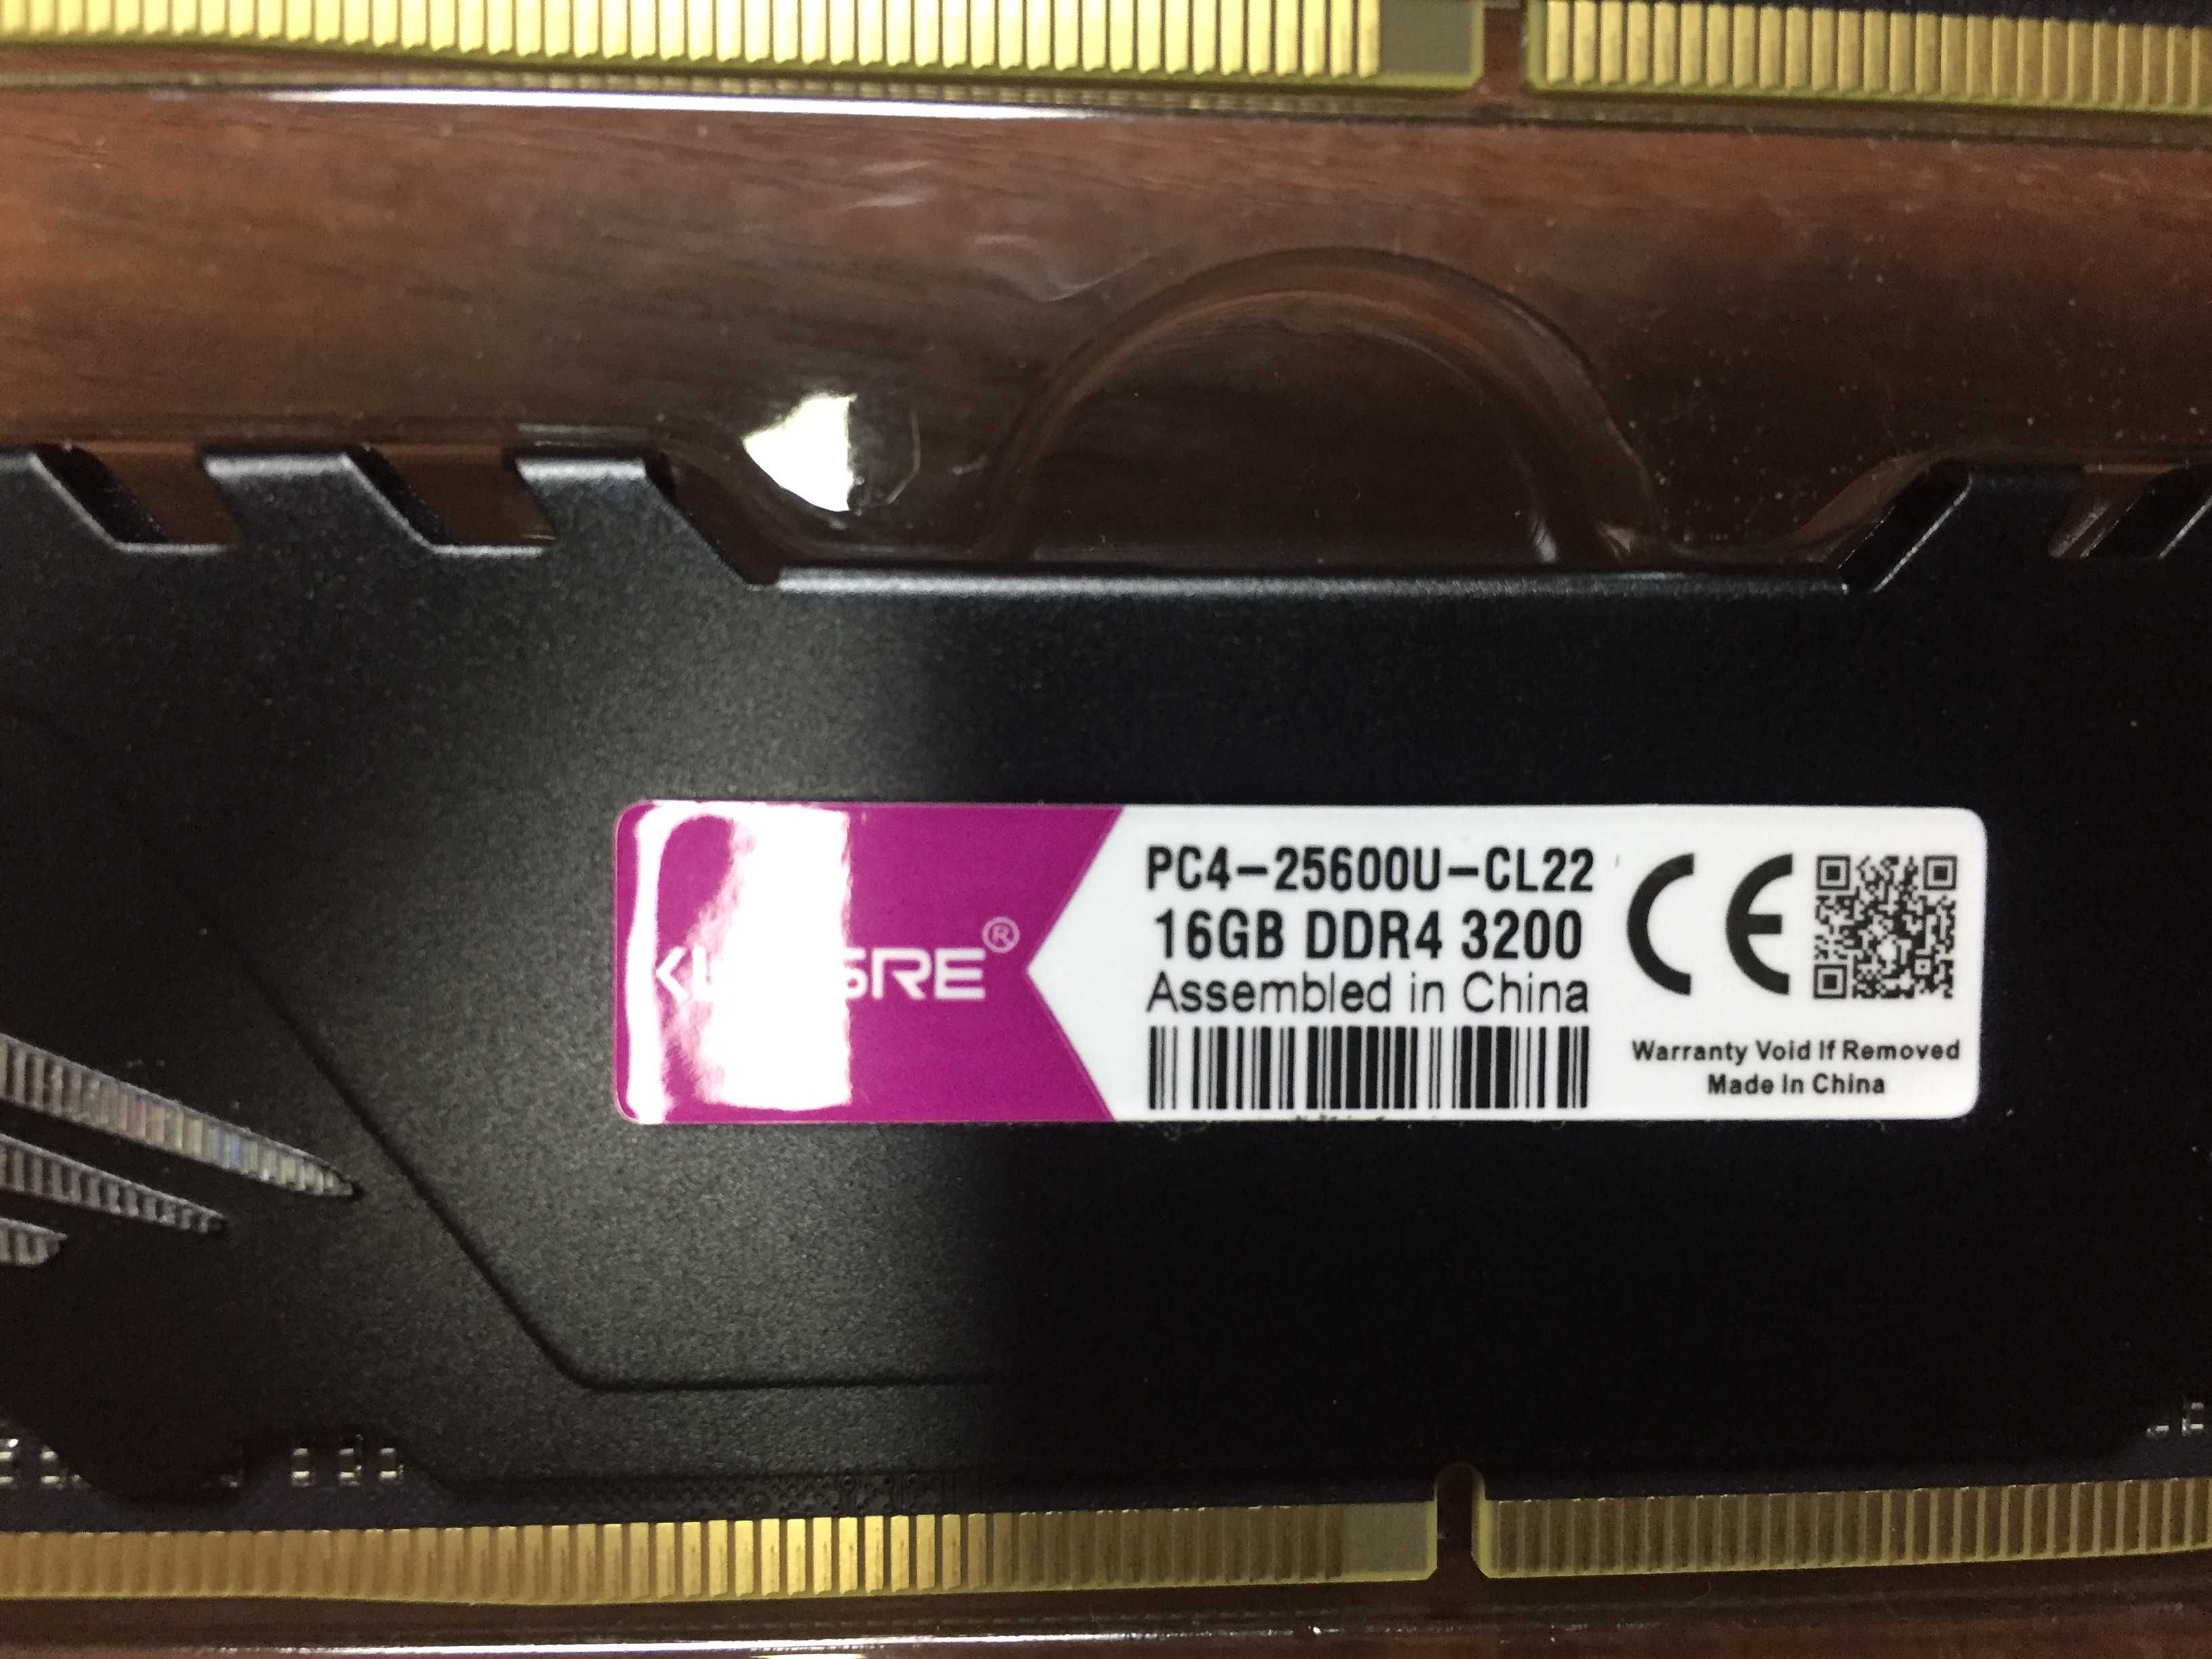 Оперативна пам`ять RAM Kllisre Kingbank 32 GB (2 x 16) DDR4 3200 MHz